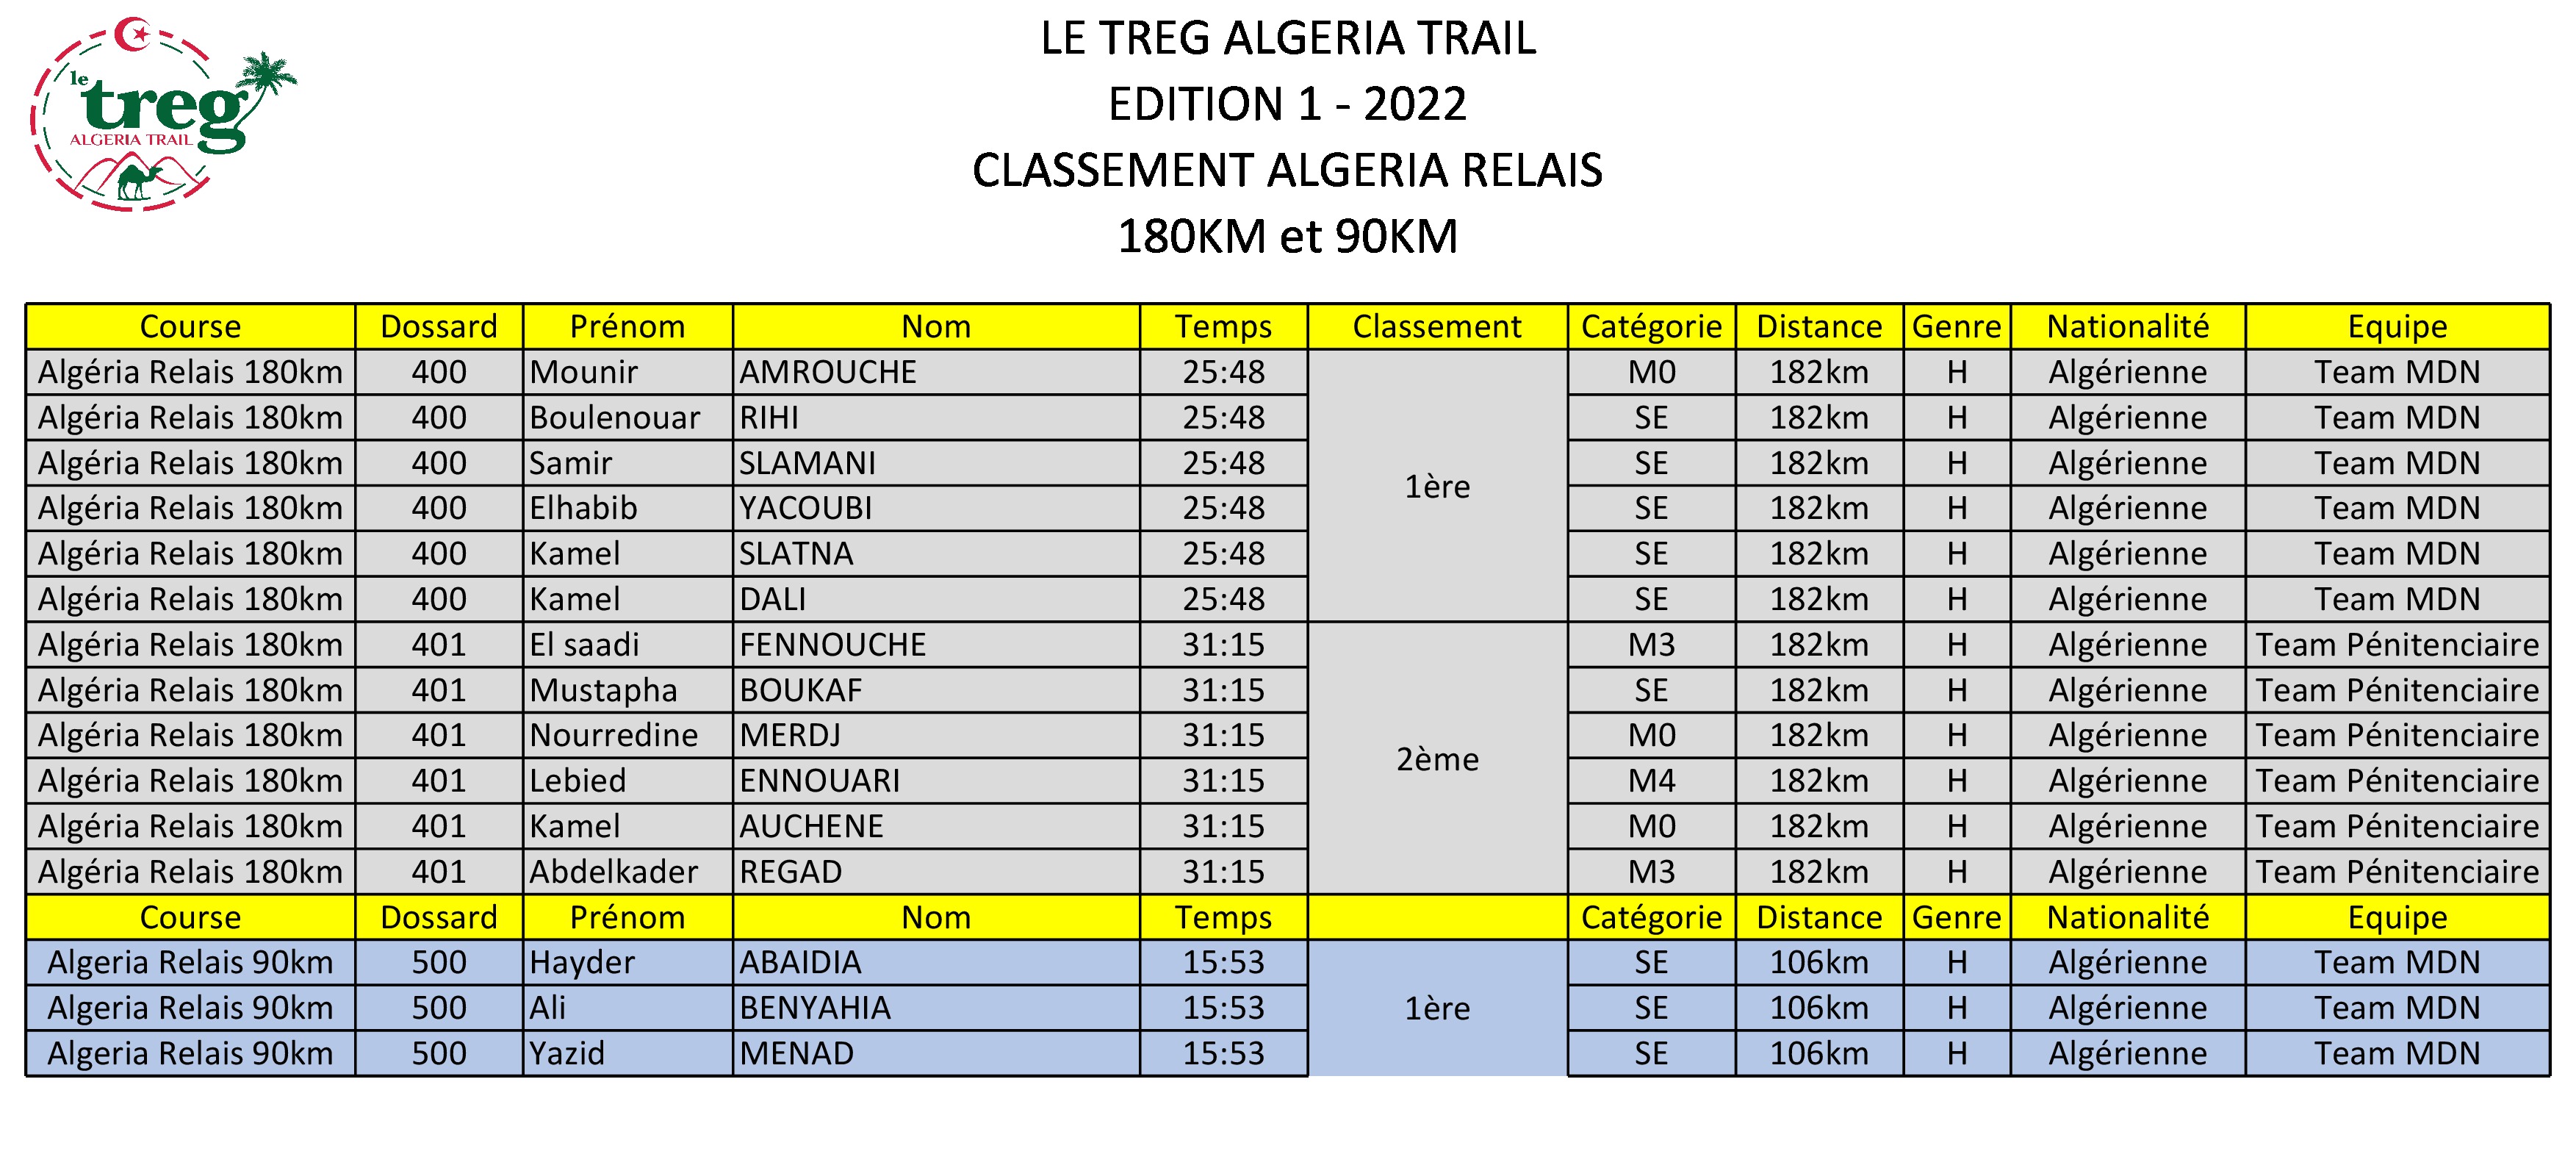 Classement Algéria Relais 180km et 90km 2022.jpg